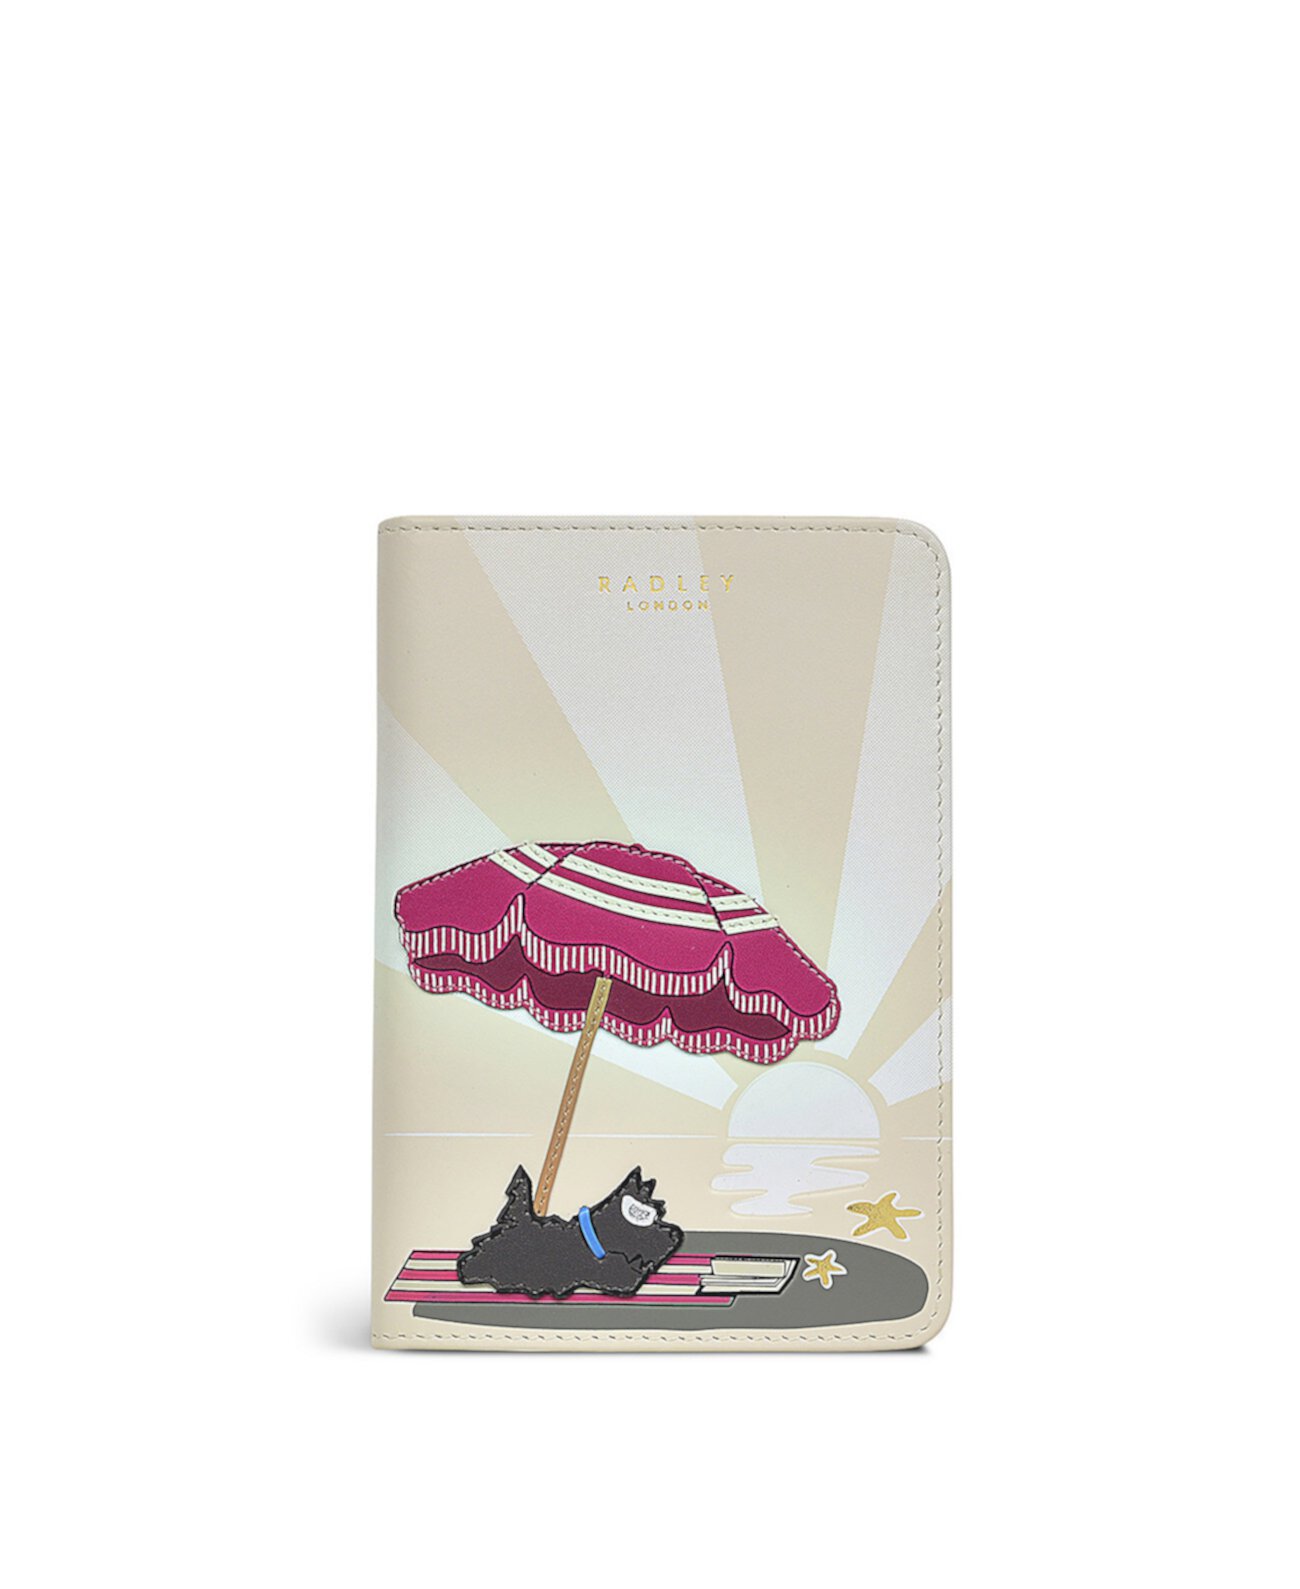 Обложка для паспорта с пляжным зонтом Radley London